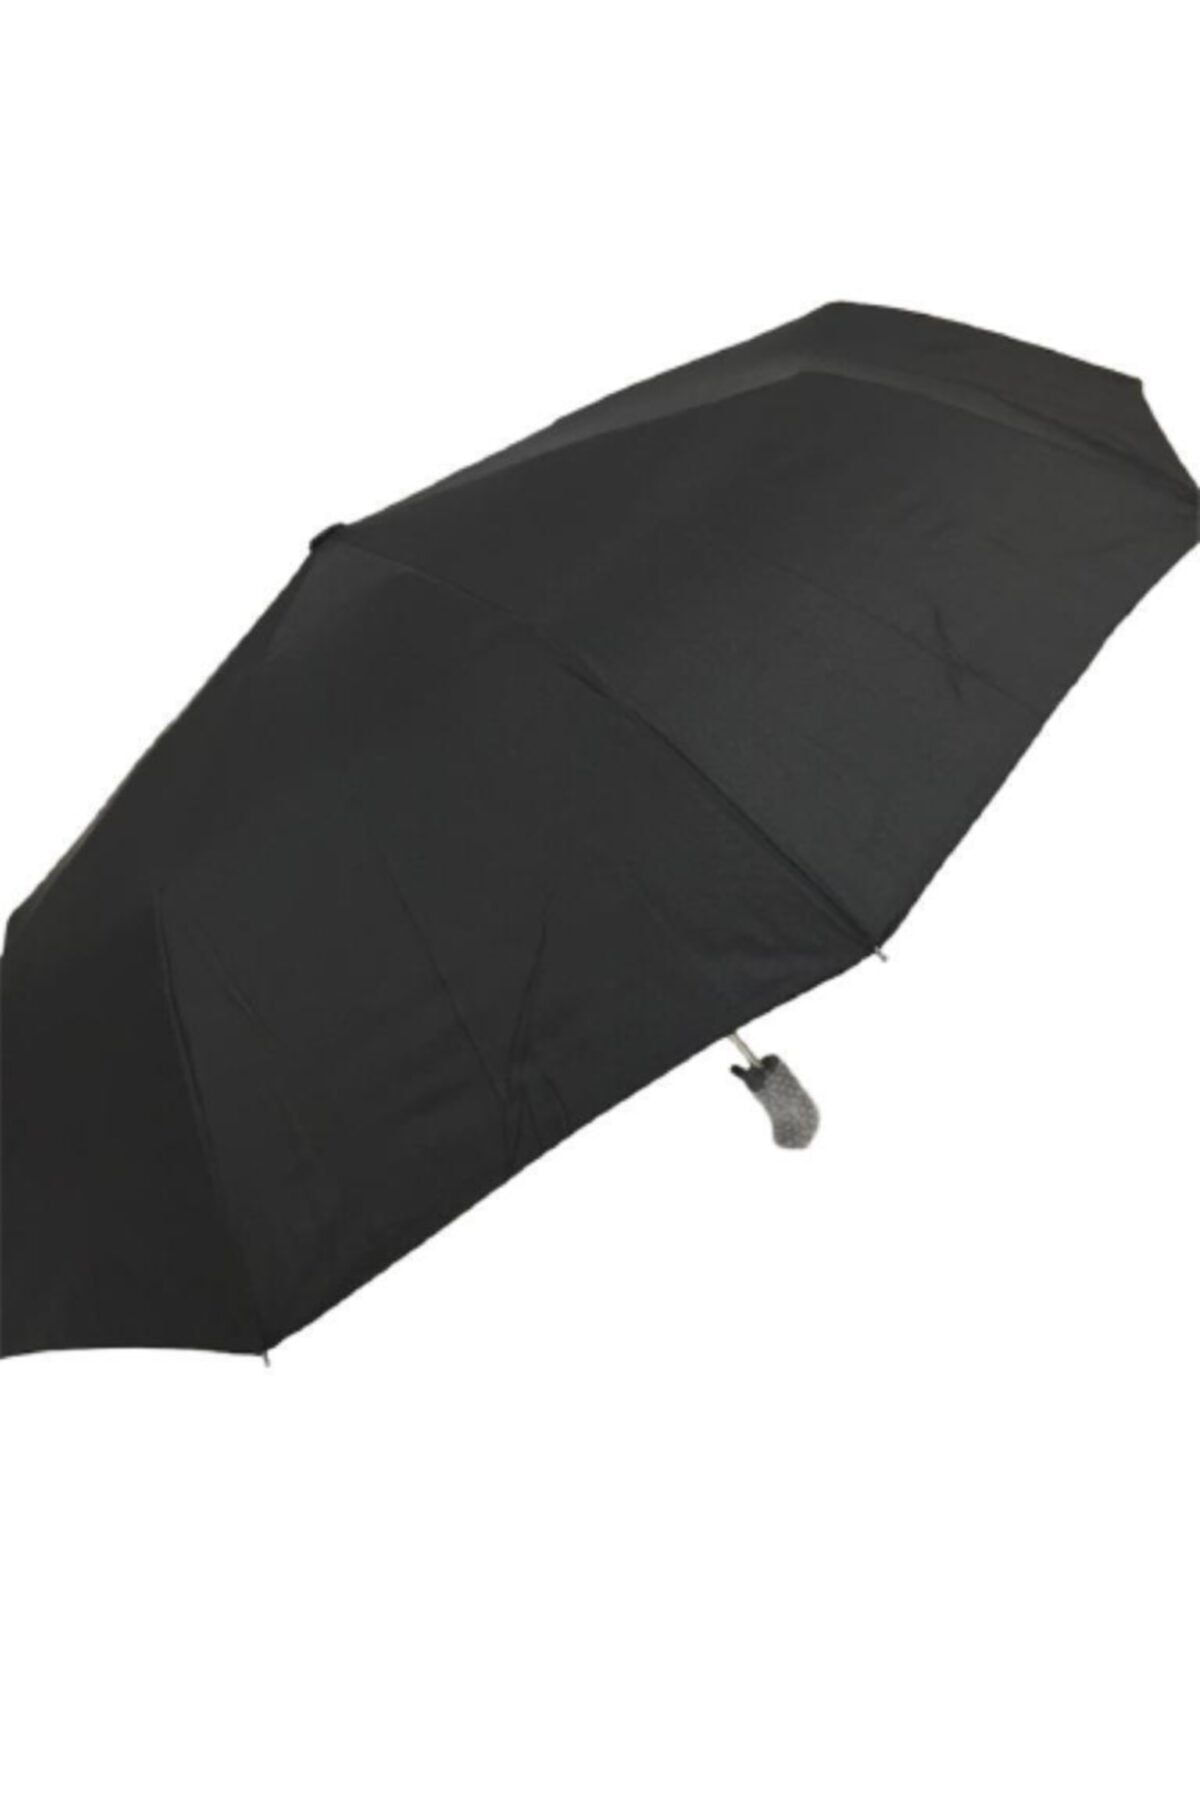 Kinary Erkek Şemsiye 10 Telli Full Otomatik Yeni Model Ürün.